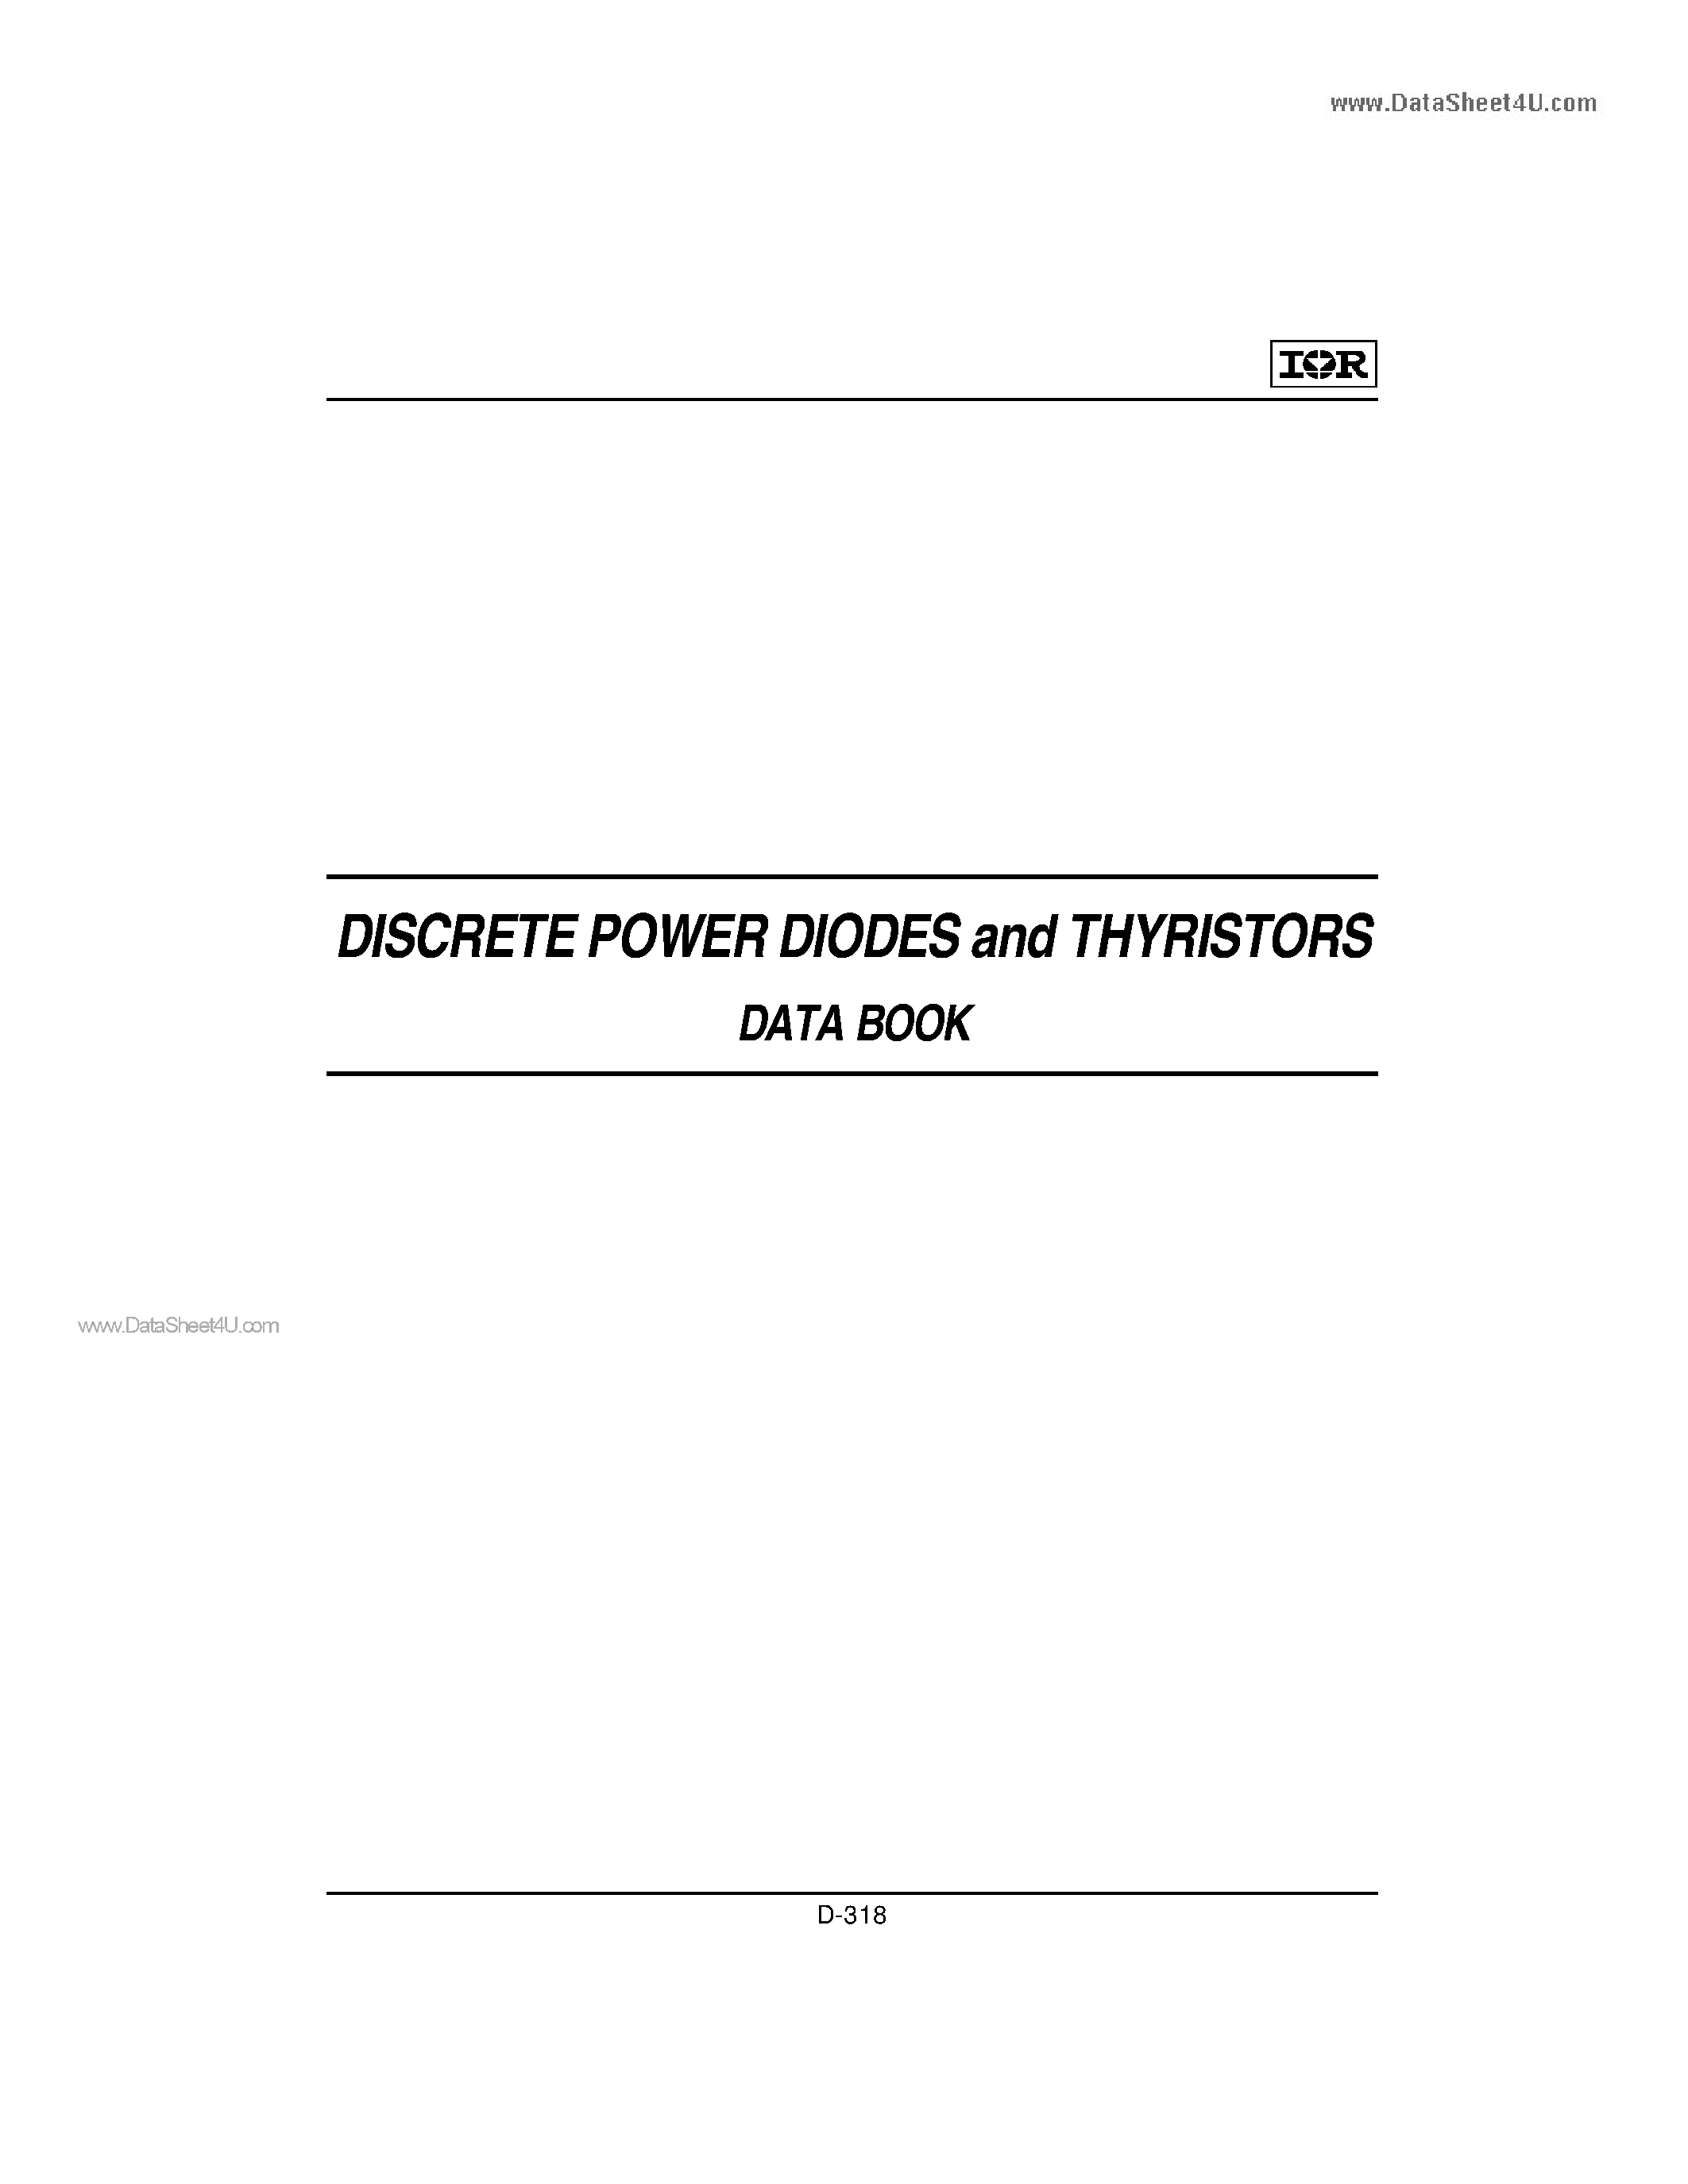 Datasheet ST330C - PHASE CONTROL THYRISTORS Hockey Puk Version page 1